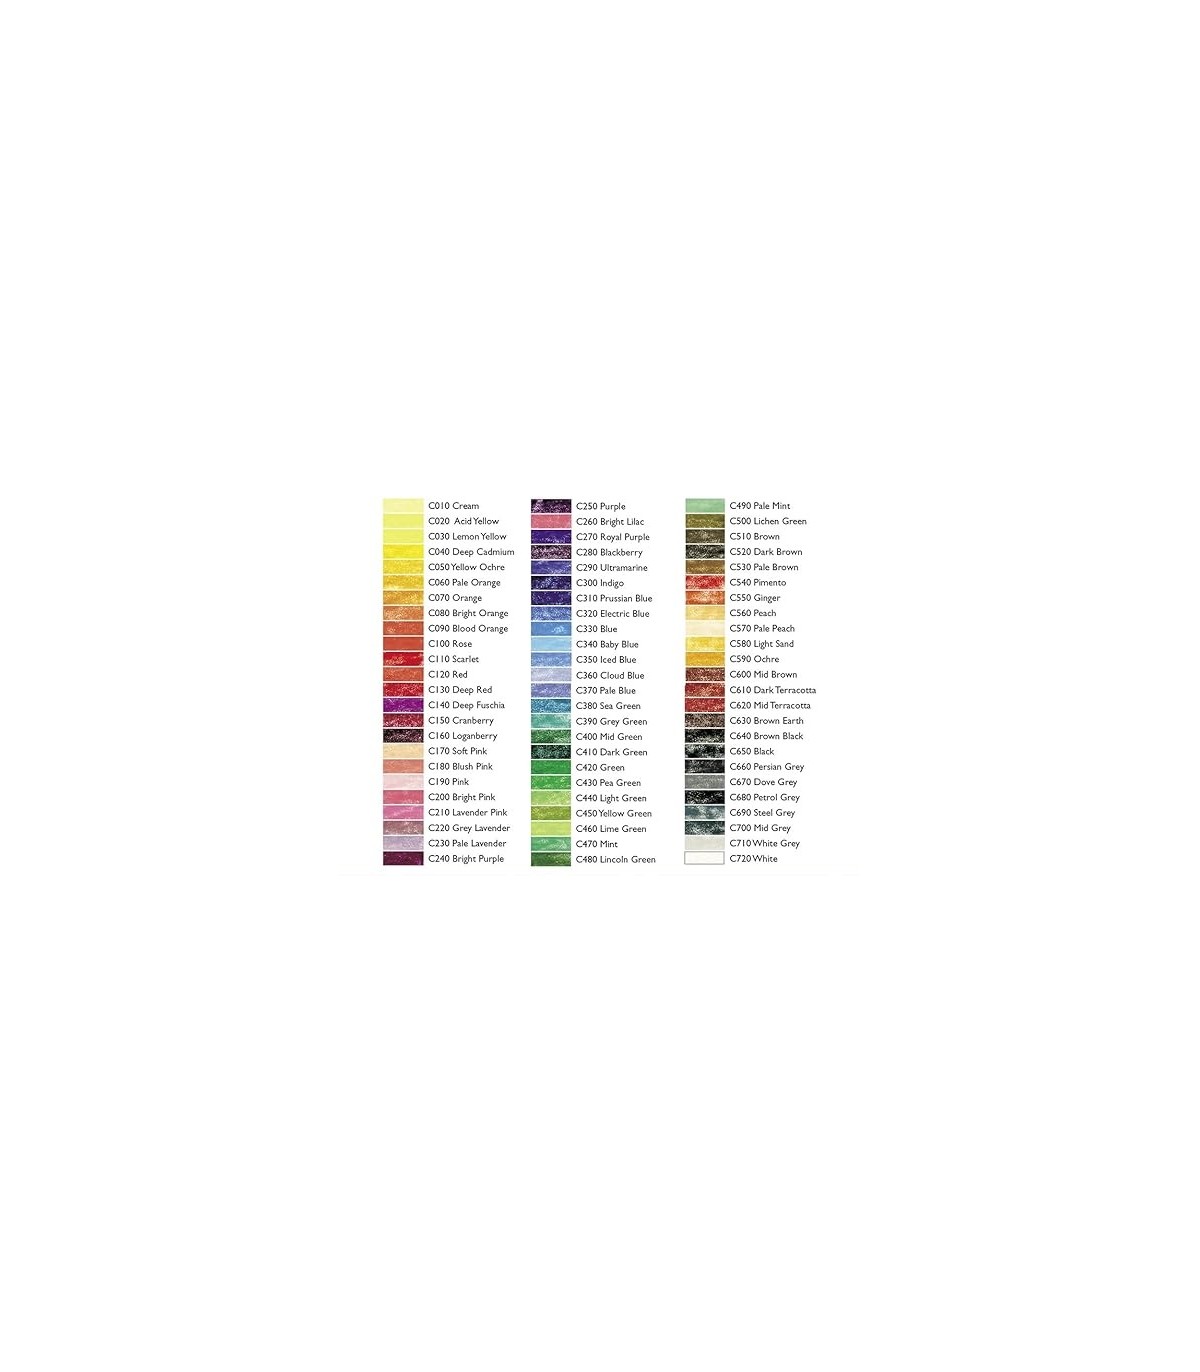 Coffret bois 48 crayons de couleurs DERWENT Coloursoft